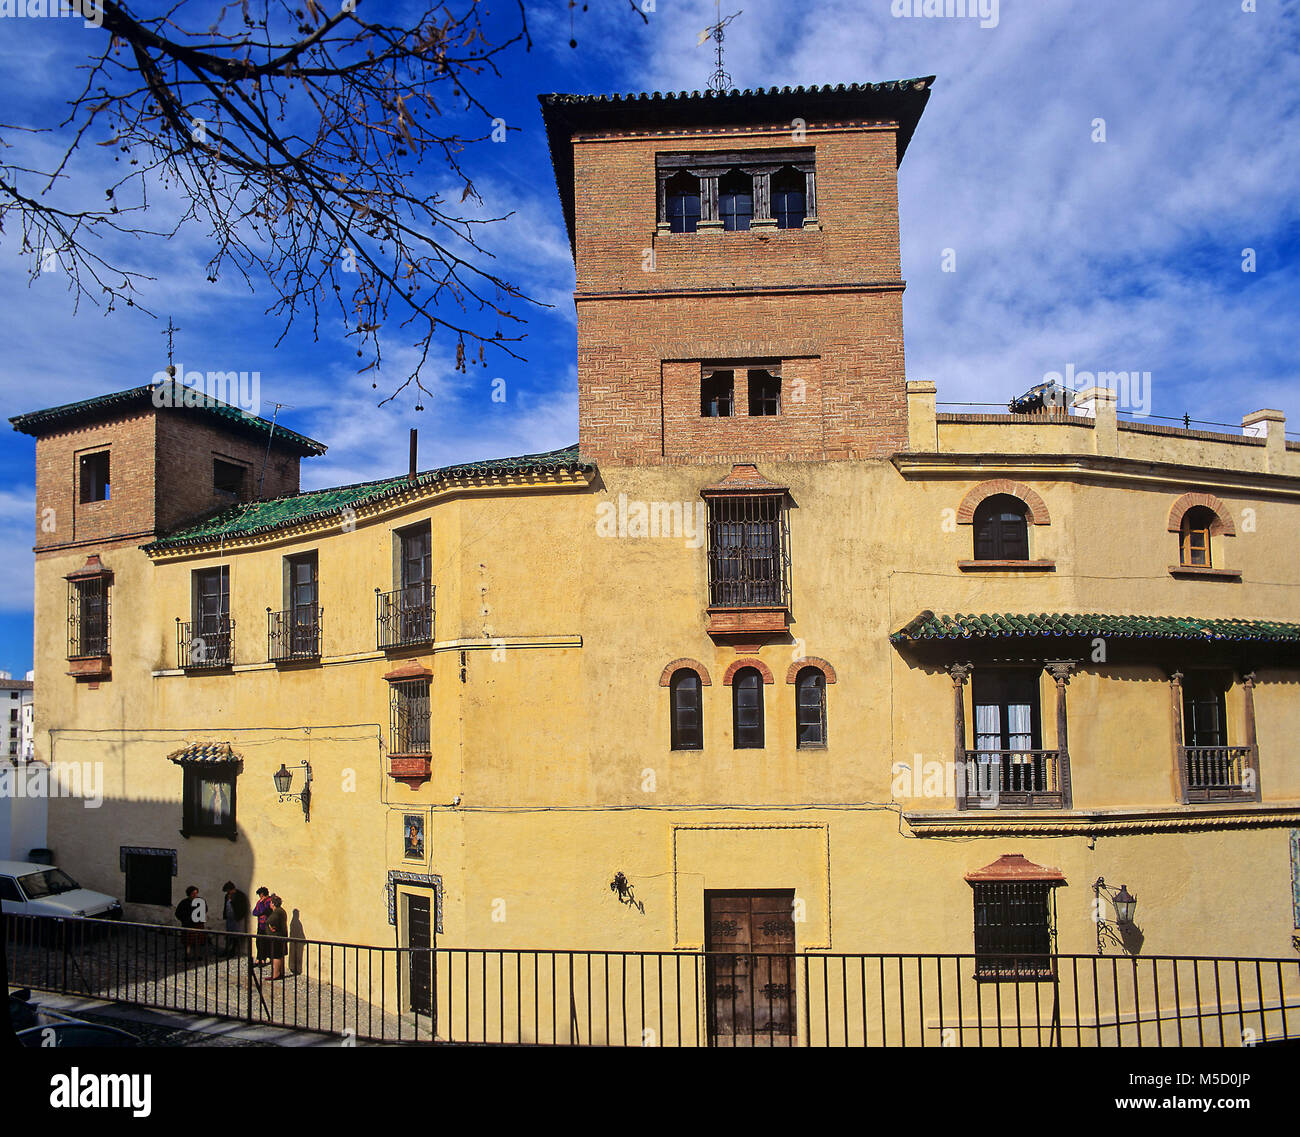 La casa del re Moro - facciata, Ronda, provincia di Malaga, regione dell'Andalusia, Spagna, Europa Foto Stock